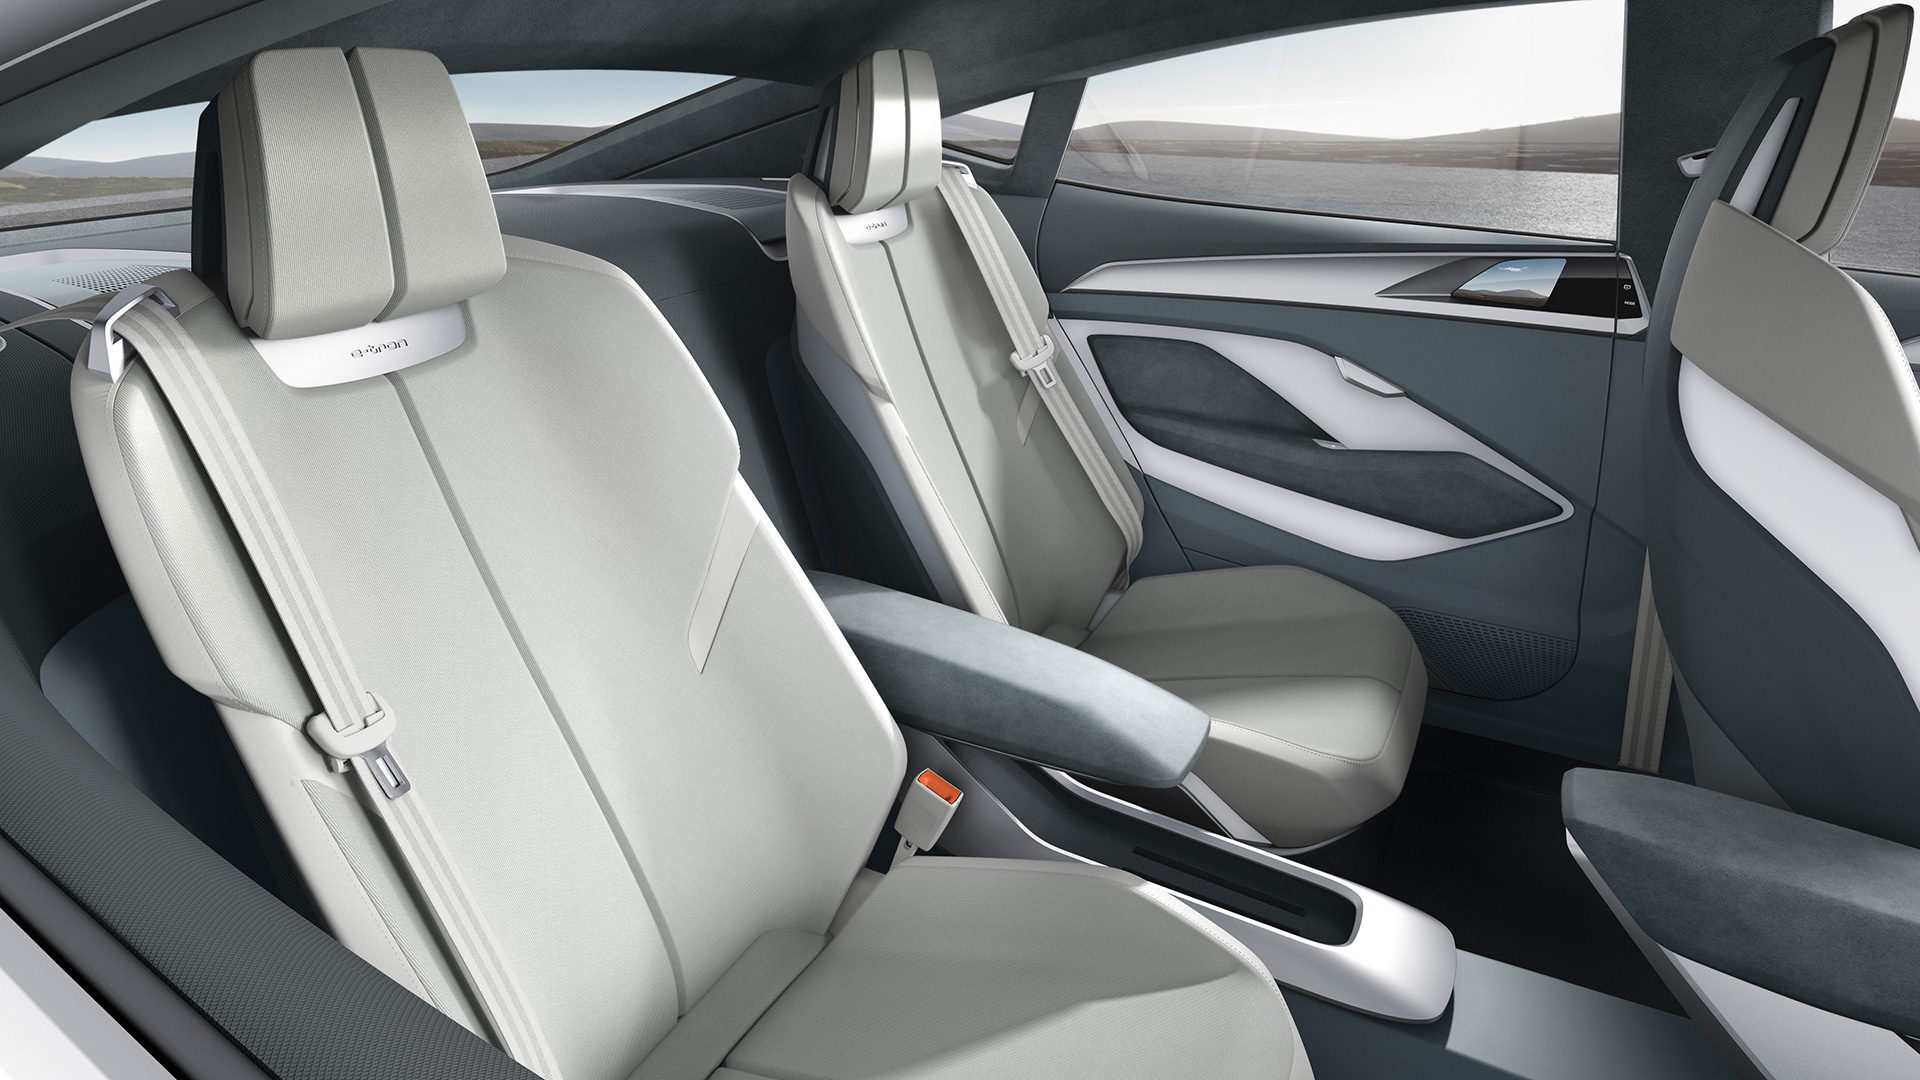 2020 Audi E-Tron Sportback interior seats design full hd